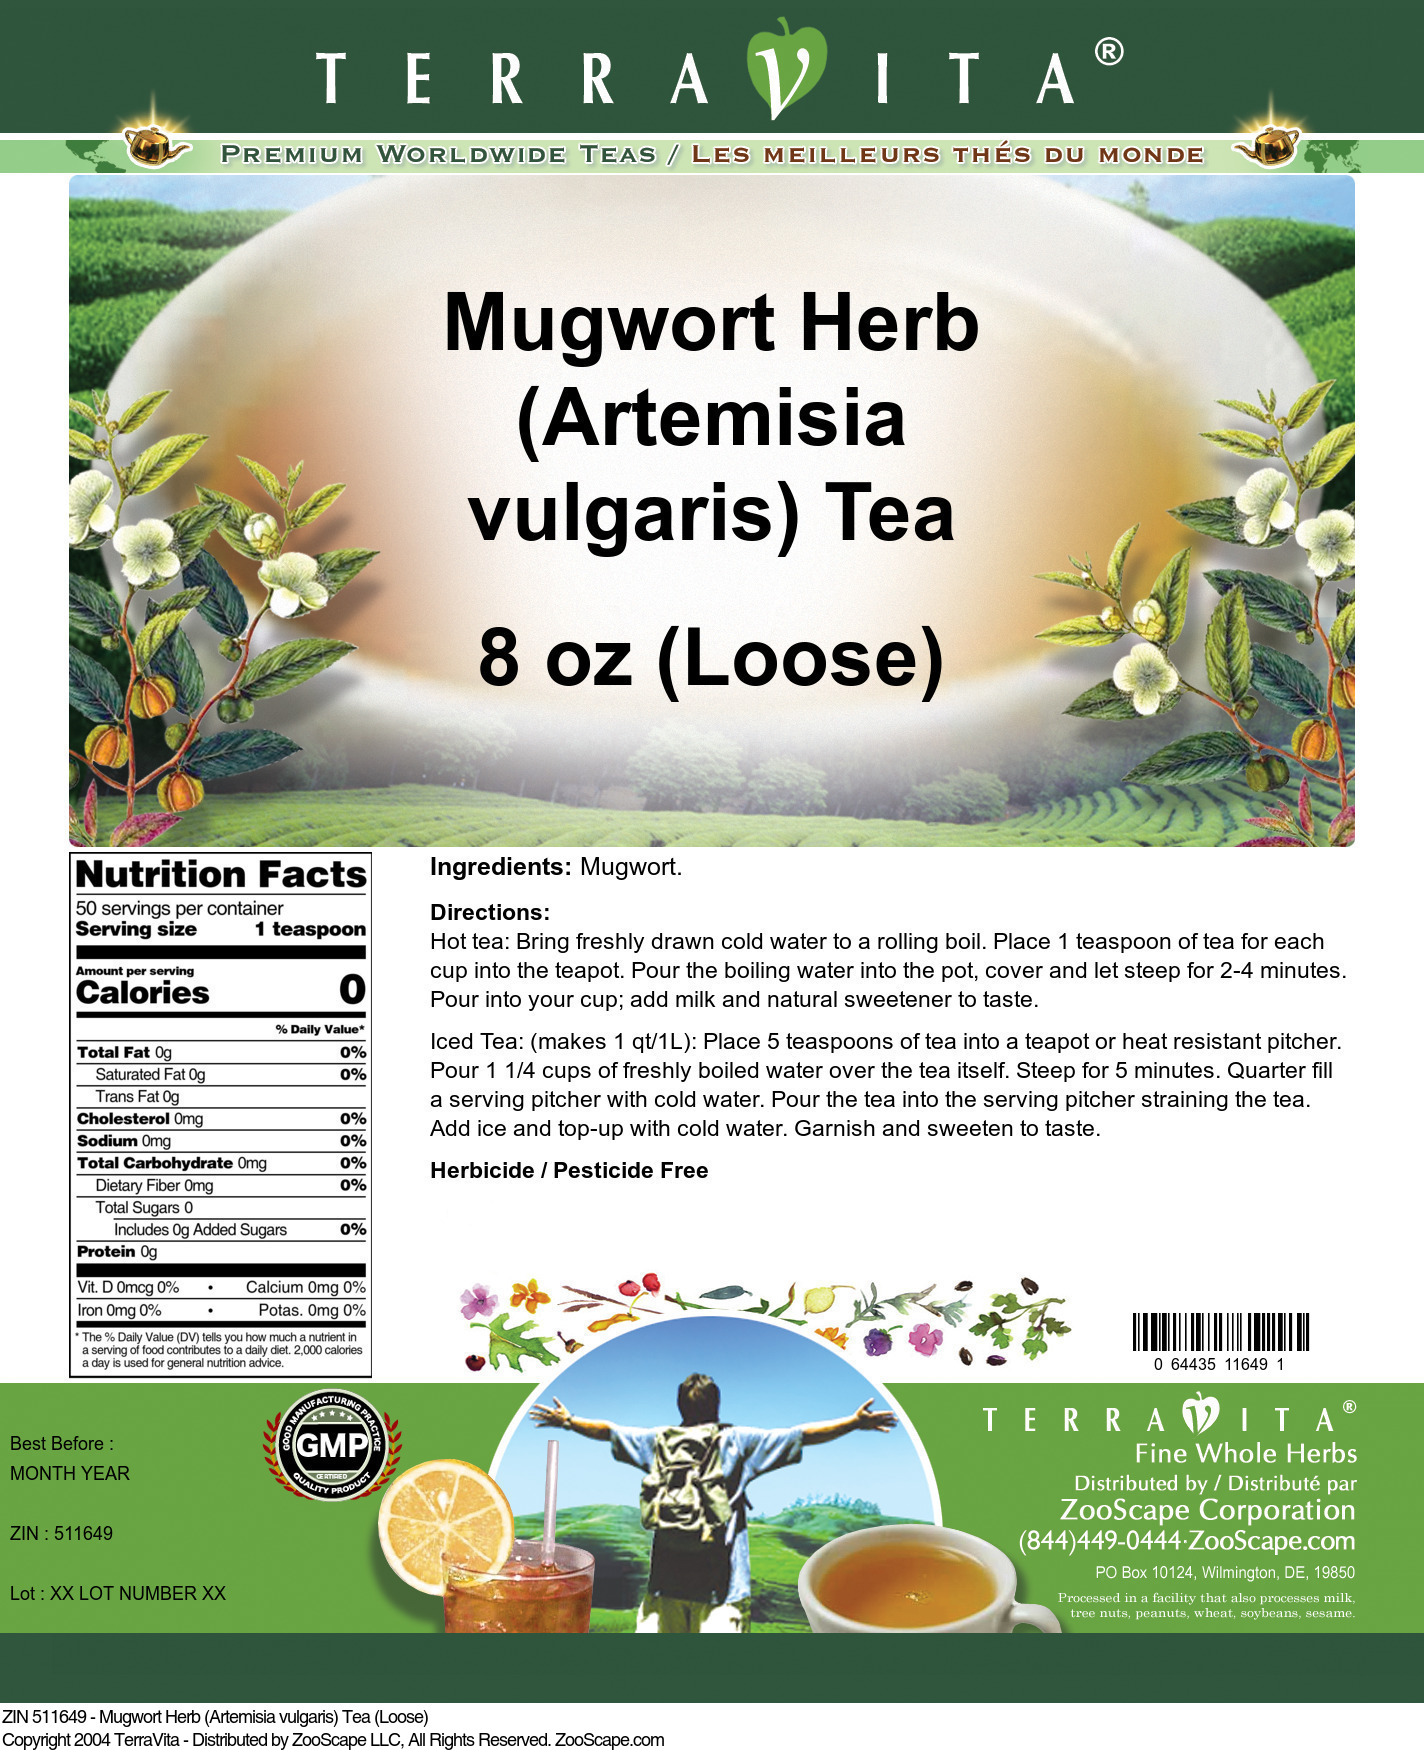 Mugwort Herb (Artemisia vulgaris) Tea (Loose) - Label